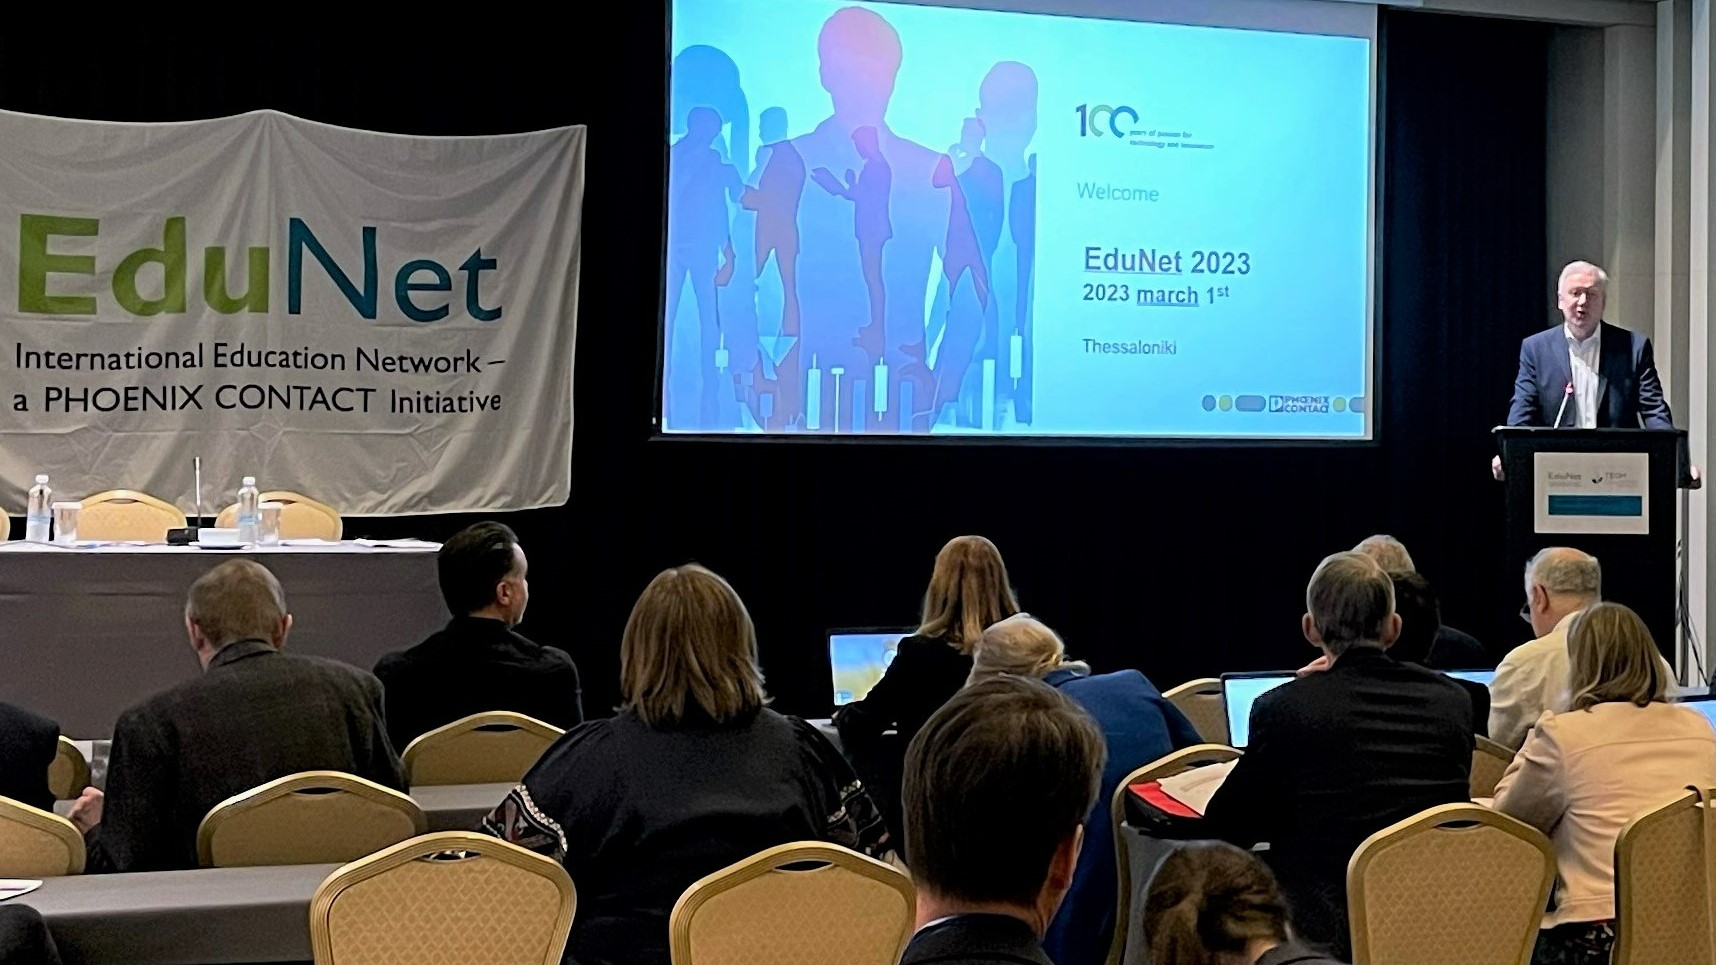 Und es geht los! Start der EduNet2023 – European Annual EduNet Conference